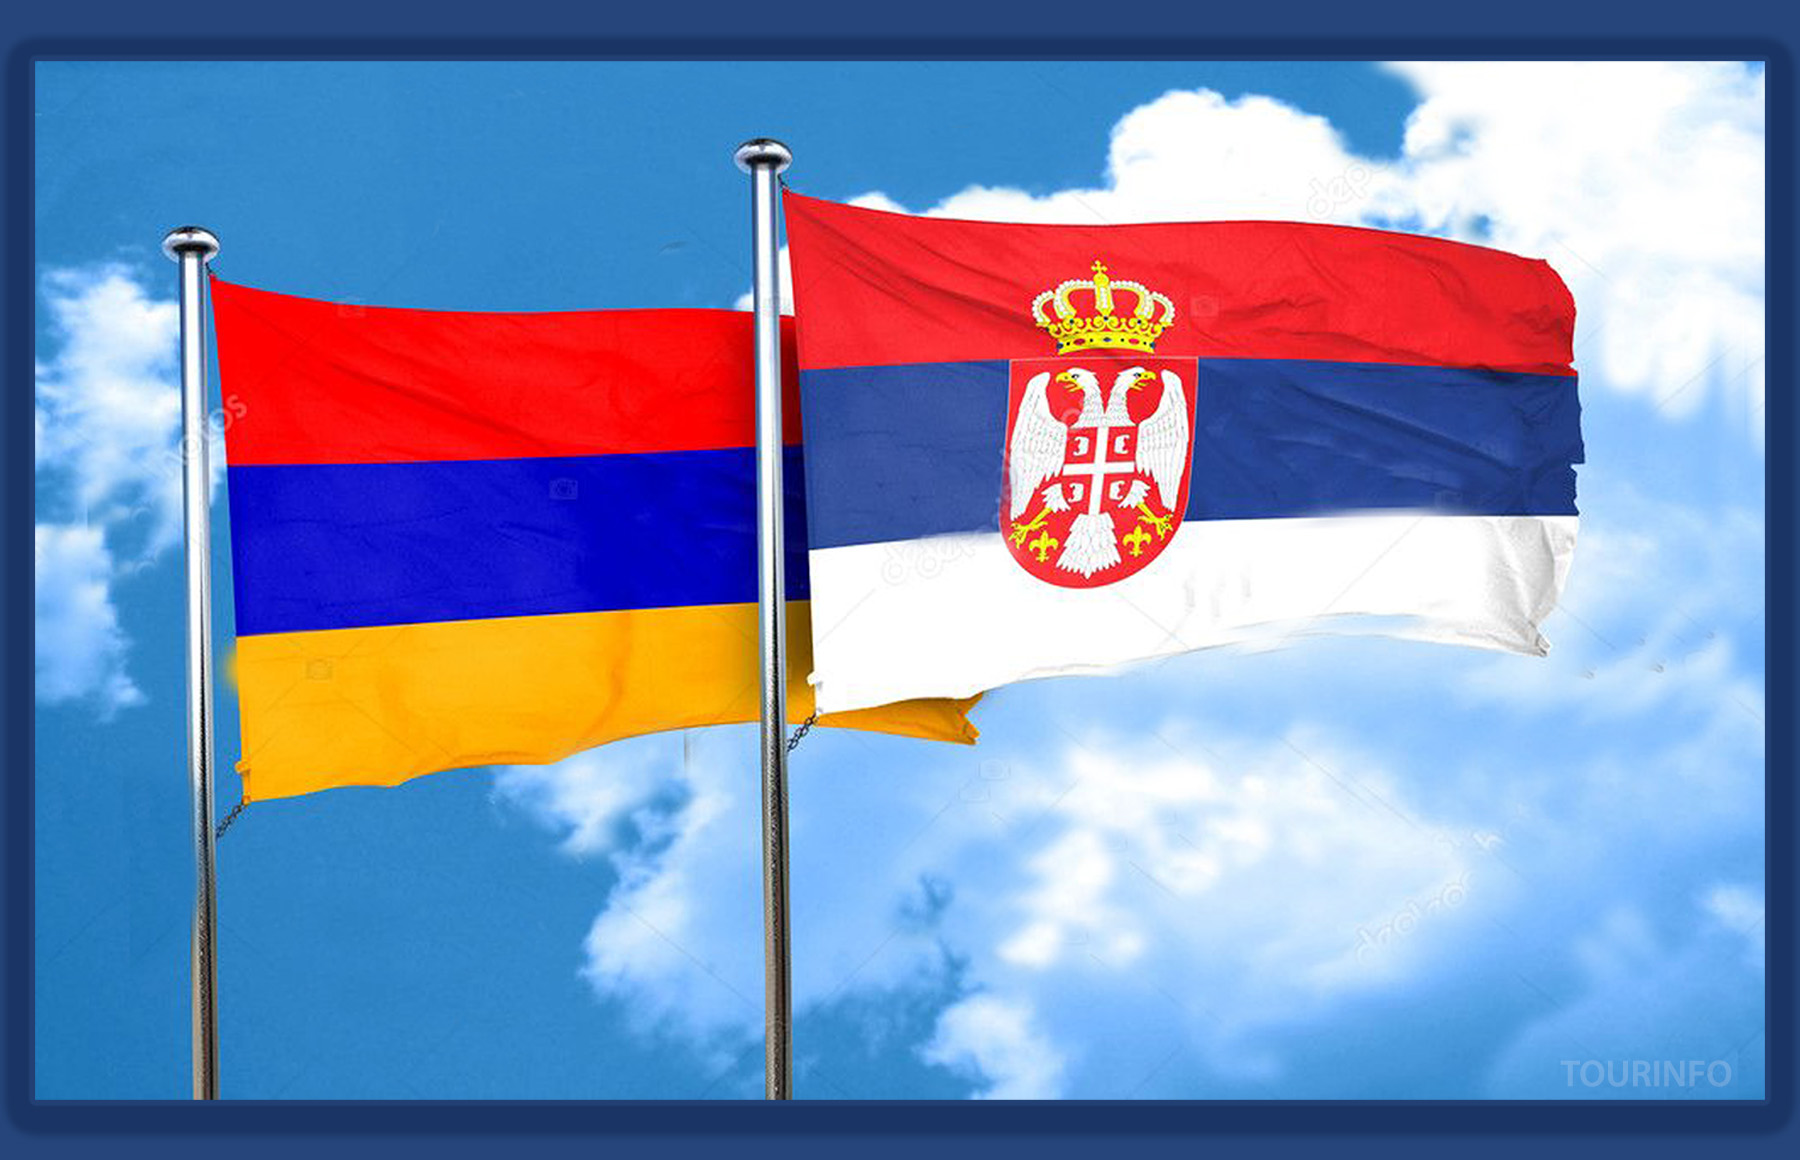 Հայ արտադրողները կստանան սերբական շուկայի մուտքի որակյալ պայմաններ. ԱԺ հանձնաժողովը քննարկեց ՀՀ և Սերբիայի միջև ազատ առևտրի համաձայնագիրը վավերացնելու հարցը